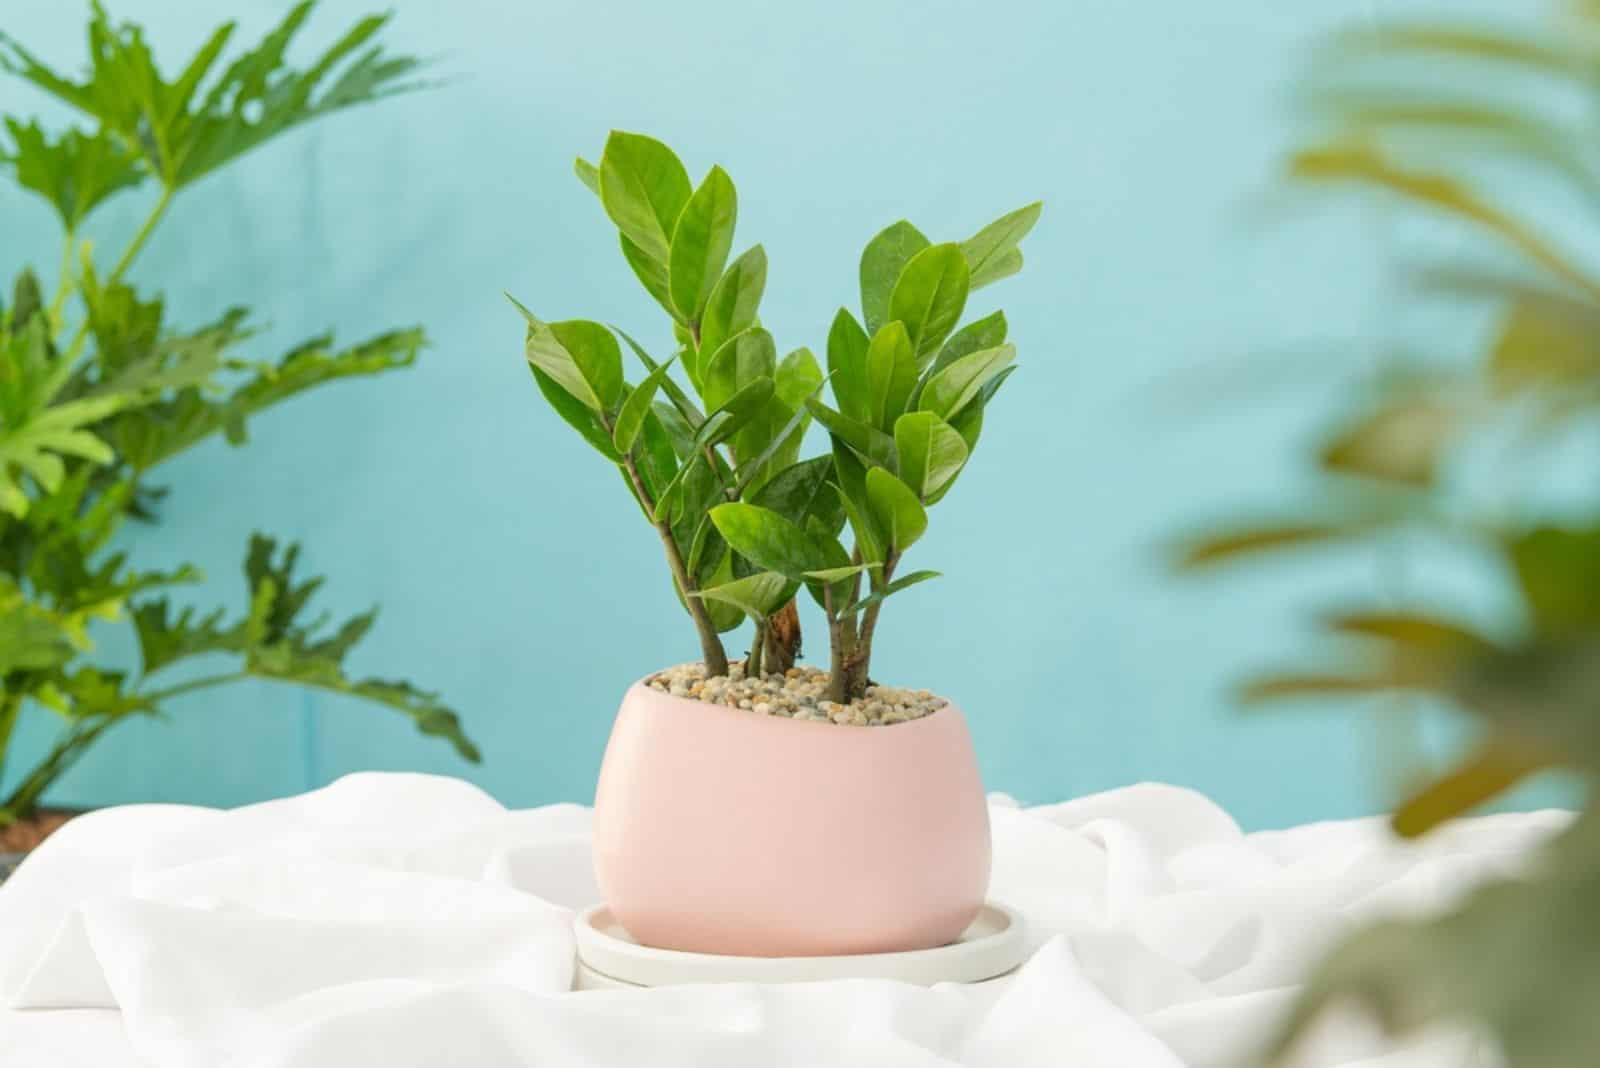 ZZ Plants in a light pink ceramic pot